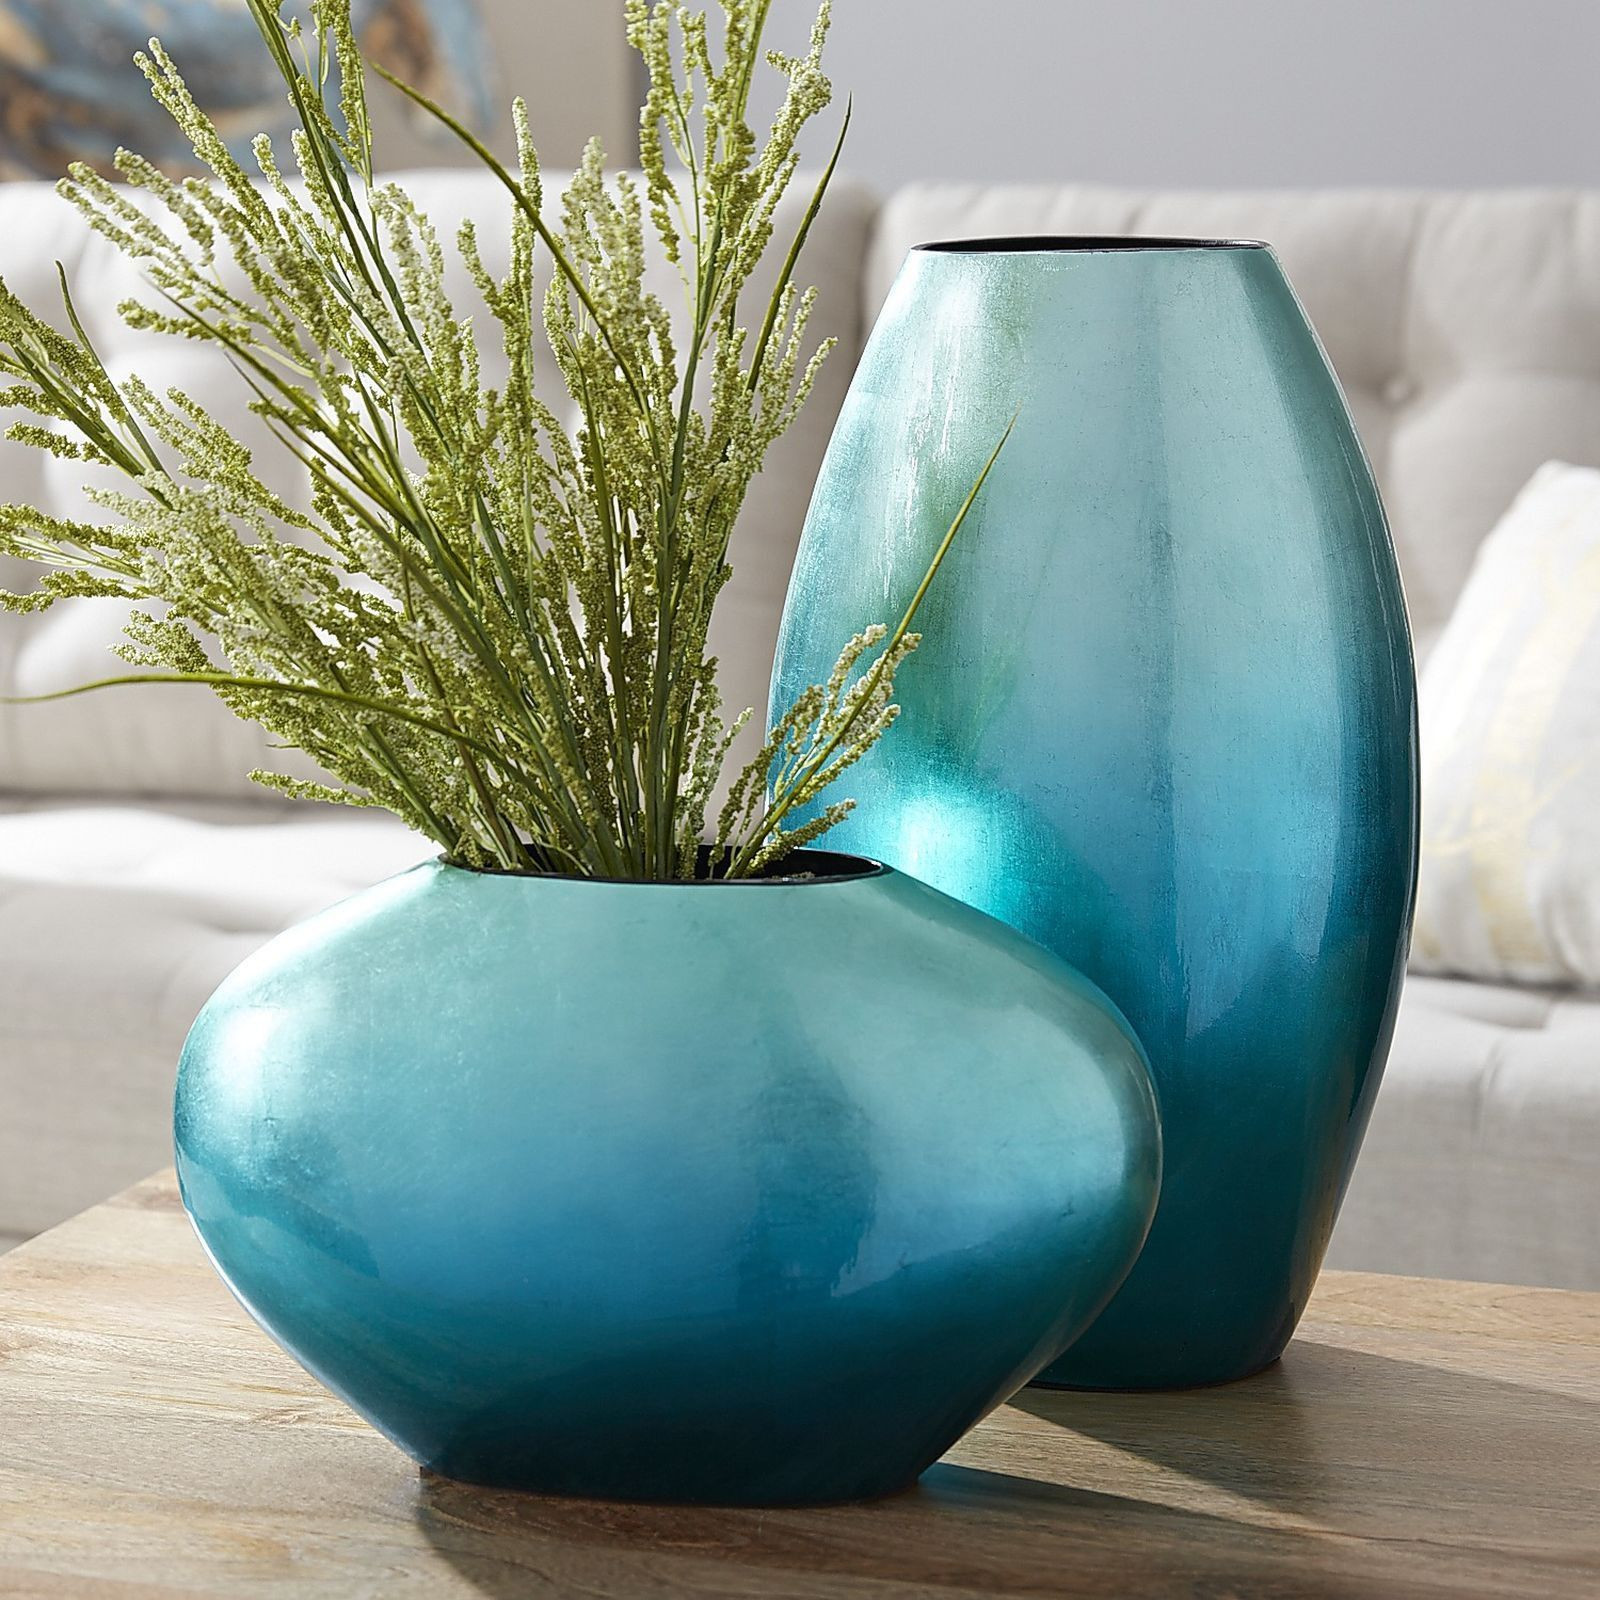 25 Elegant Wedgwood Blue Vase 2024 free download wedgwood blue vase of 37 fenton blue glass vase the weekly world in 37 fenton blue glass vase